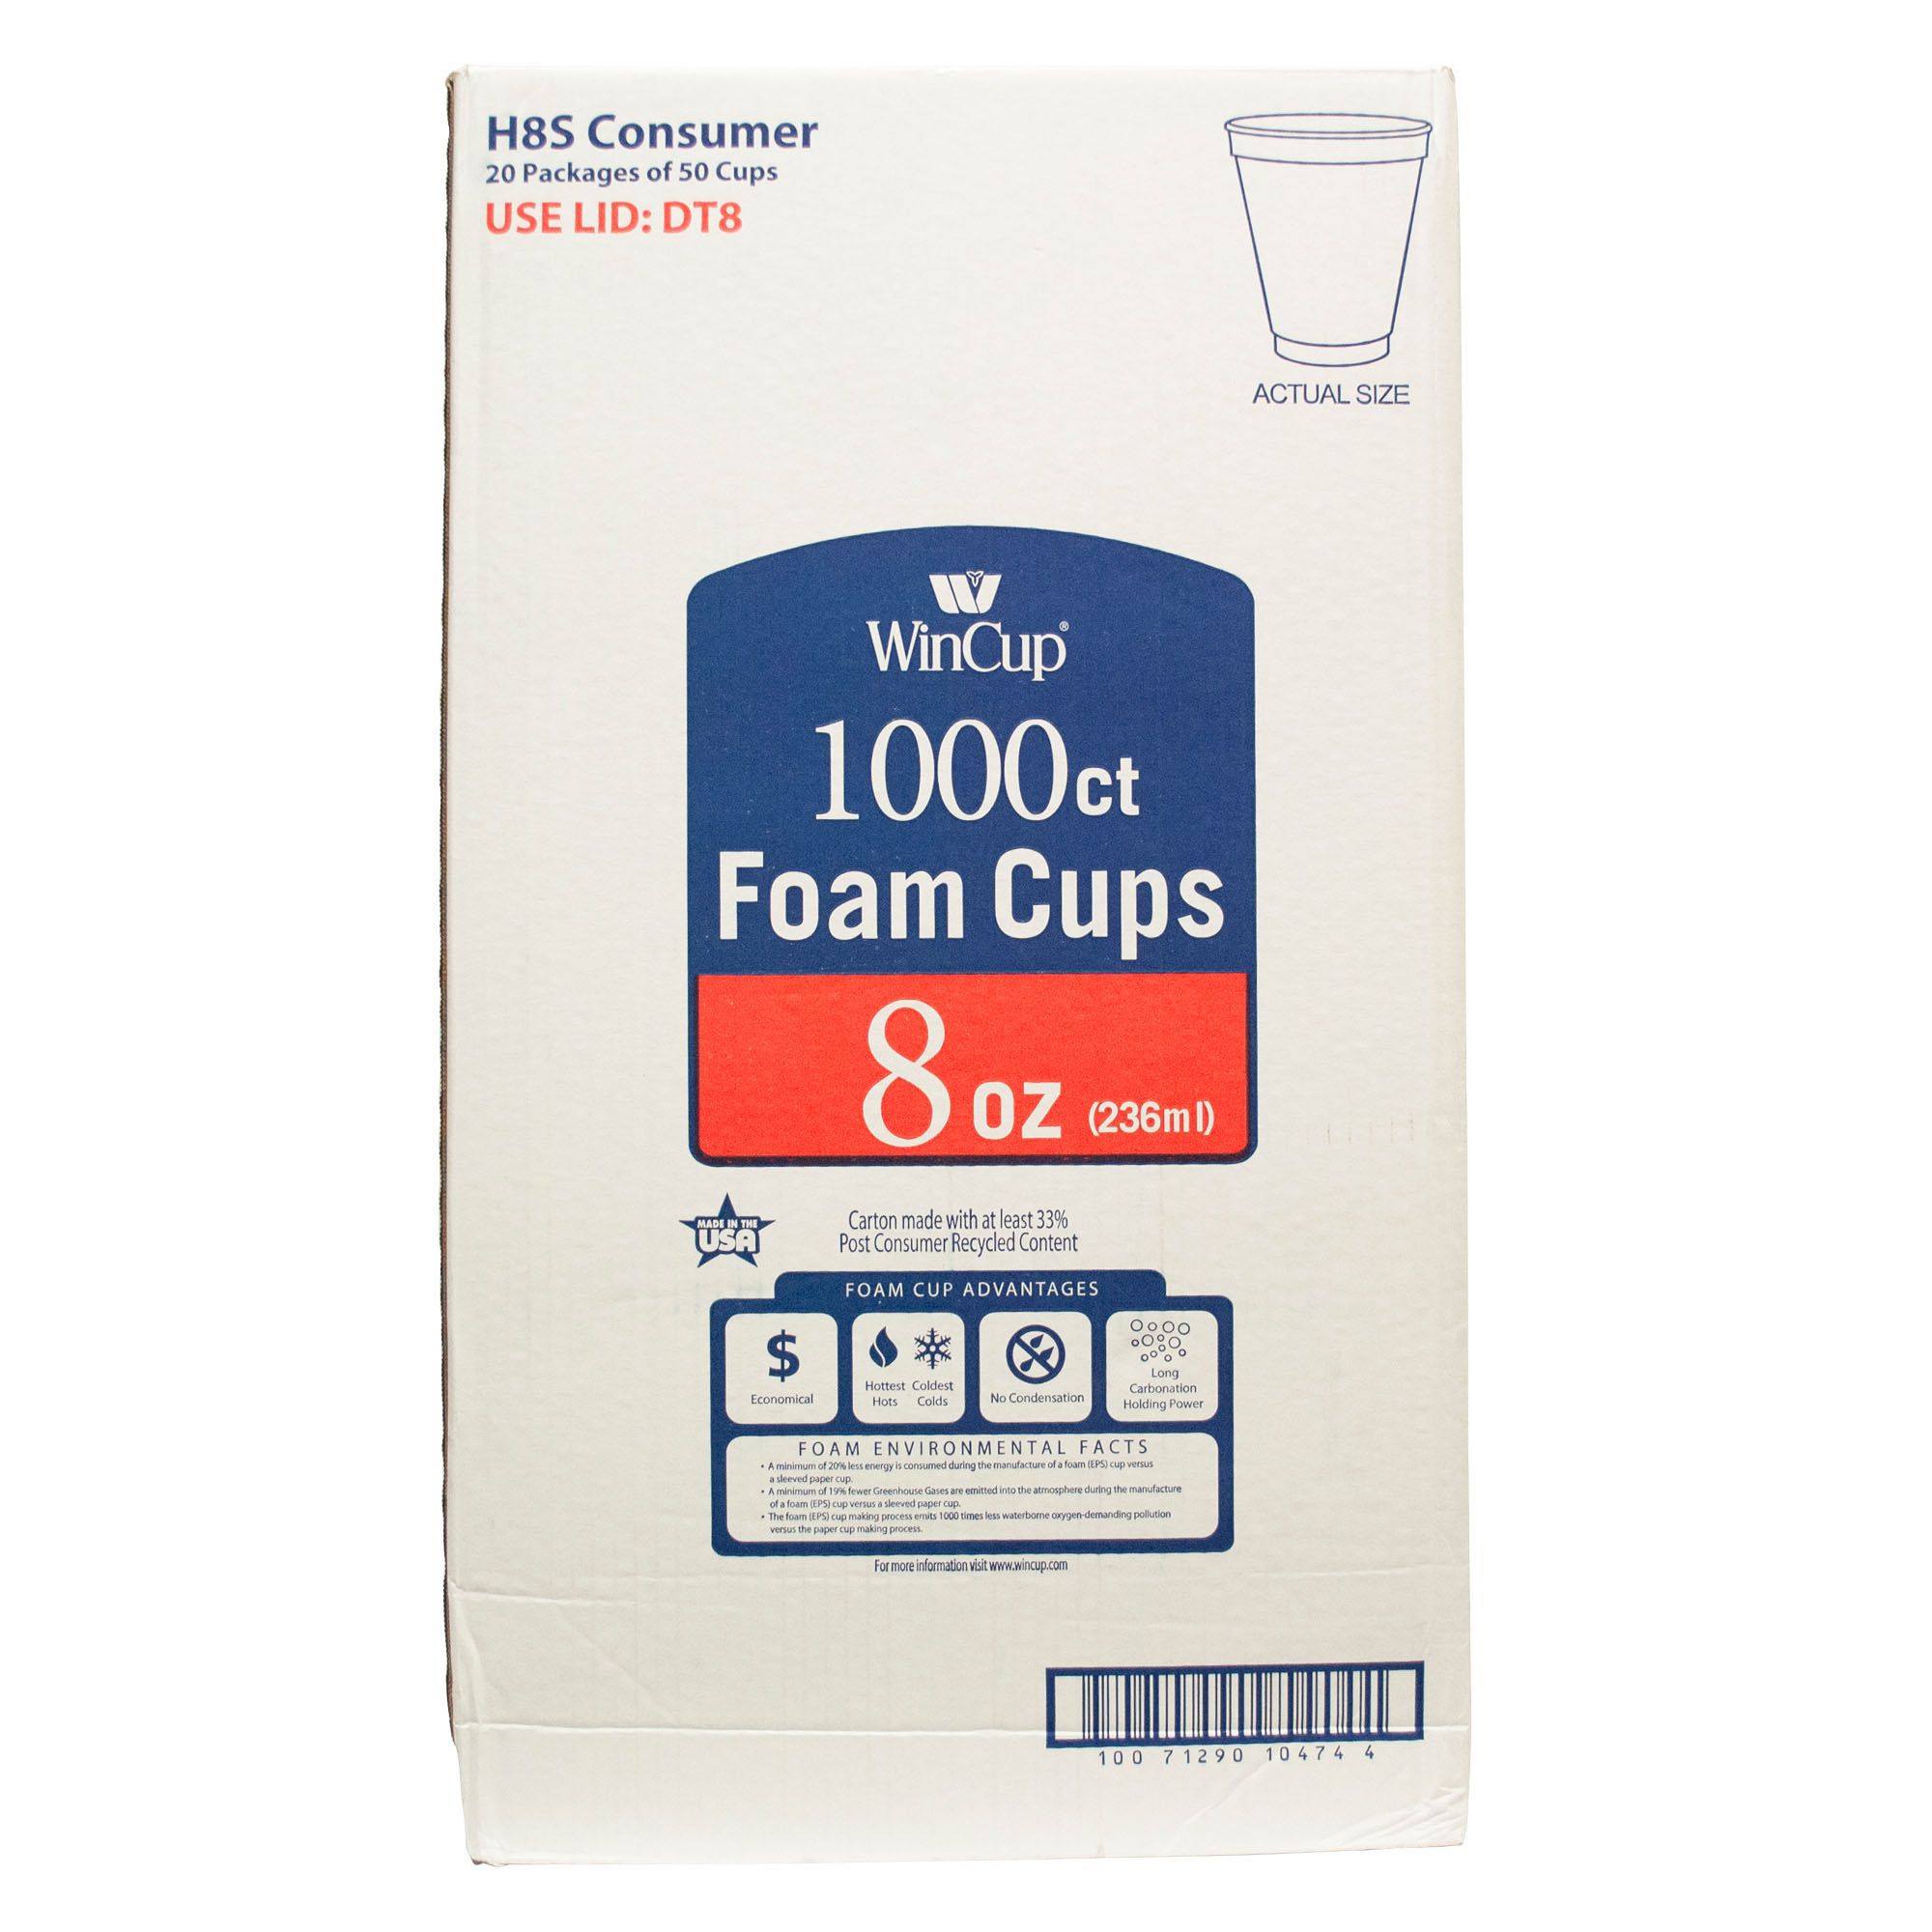 WinCup 16-Oz. Foam Cups, 500 ct. - White